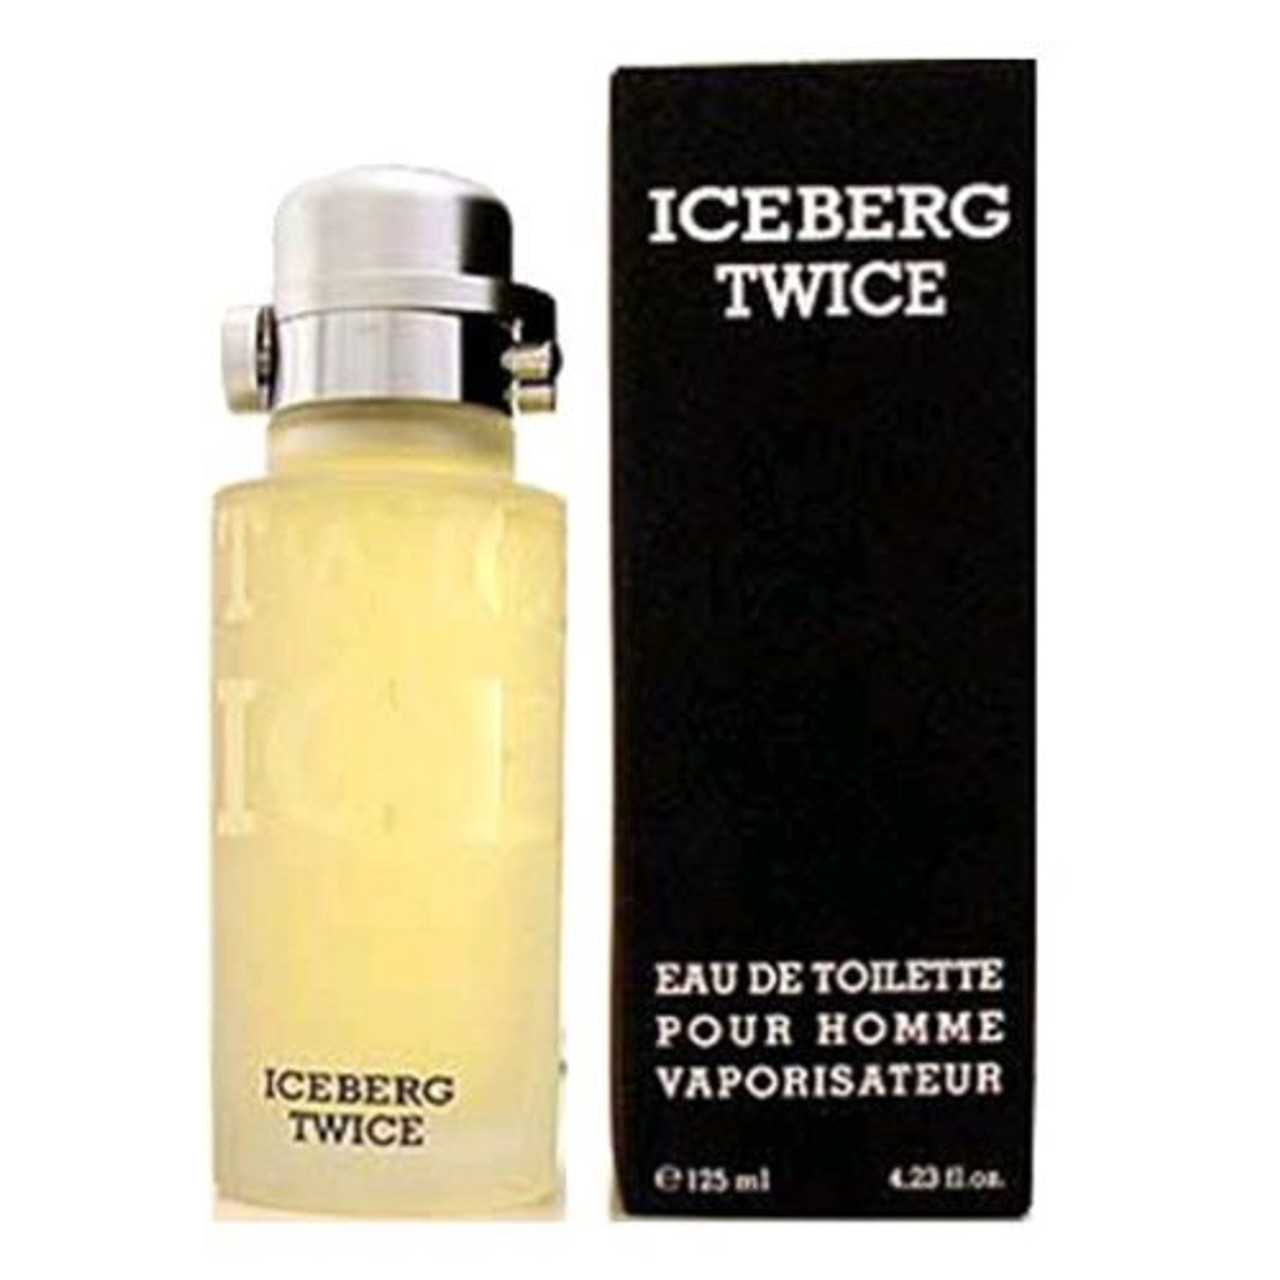 4.2 Iceberg - ForeverLux for men oz by EDT Iceberg Twice